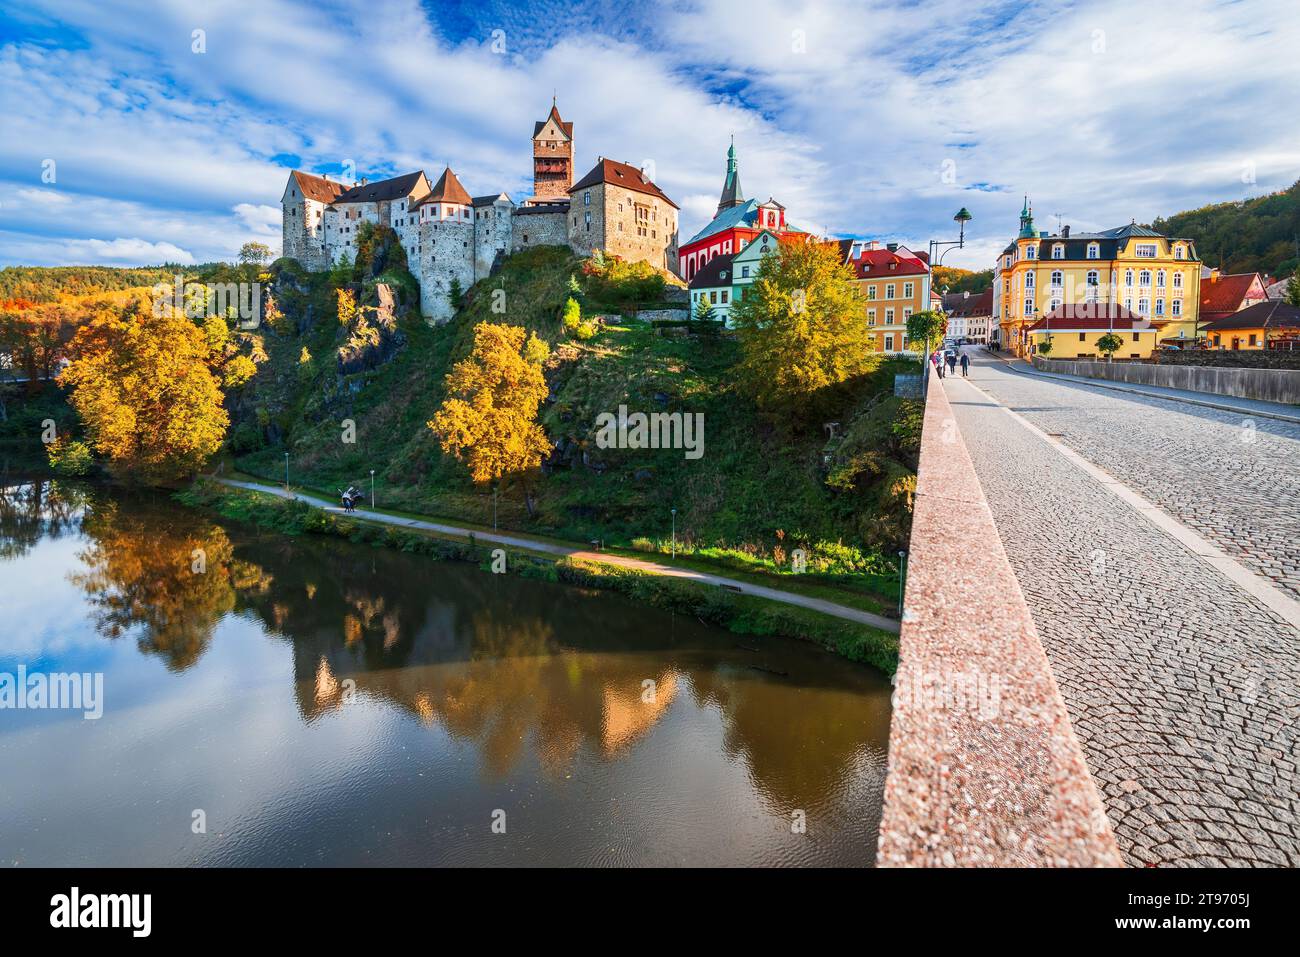 Loket, République tchèque. Ville colorée et château de Loket sur la rivière Ohre près de Karlovy Vary, Bohême. Banque D'Images